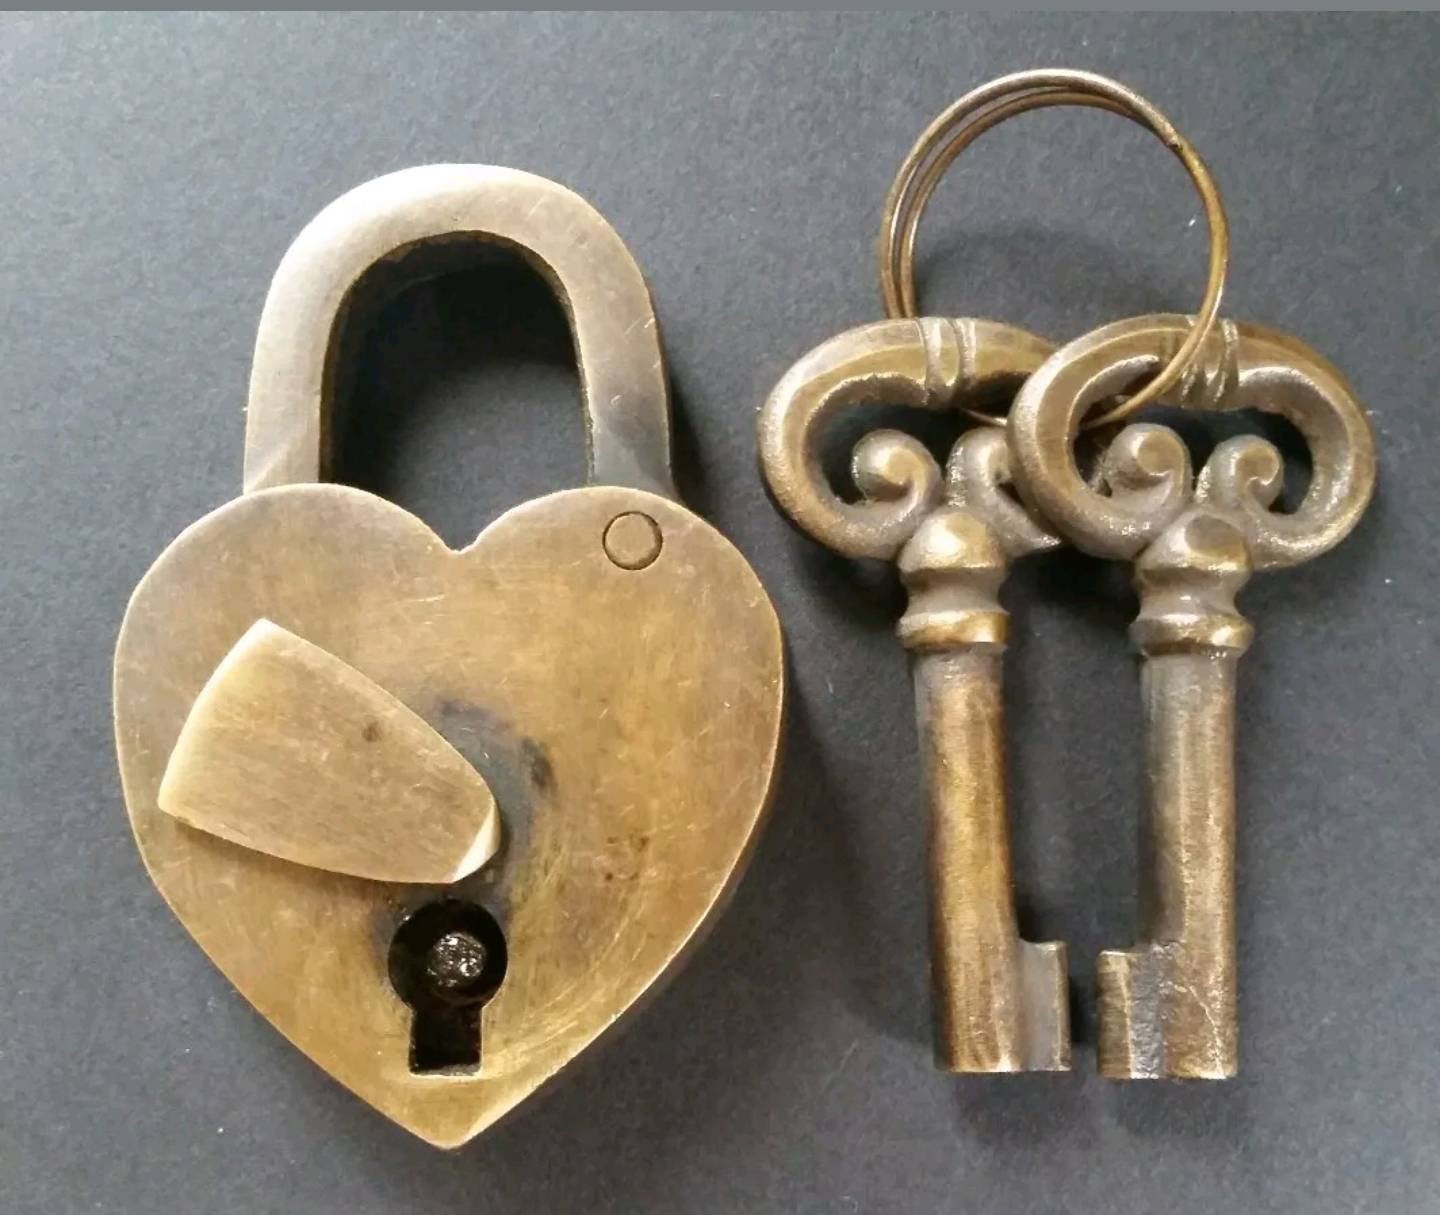 Heart Shaped Love Lock, Commitment Lock, Paris Bridge lock, Valentine Lock with 2 Ornate Keys #L8